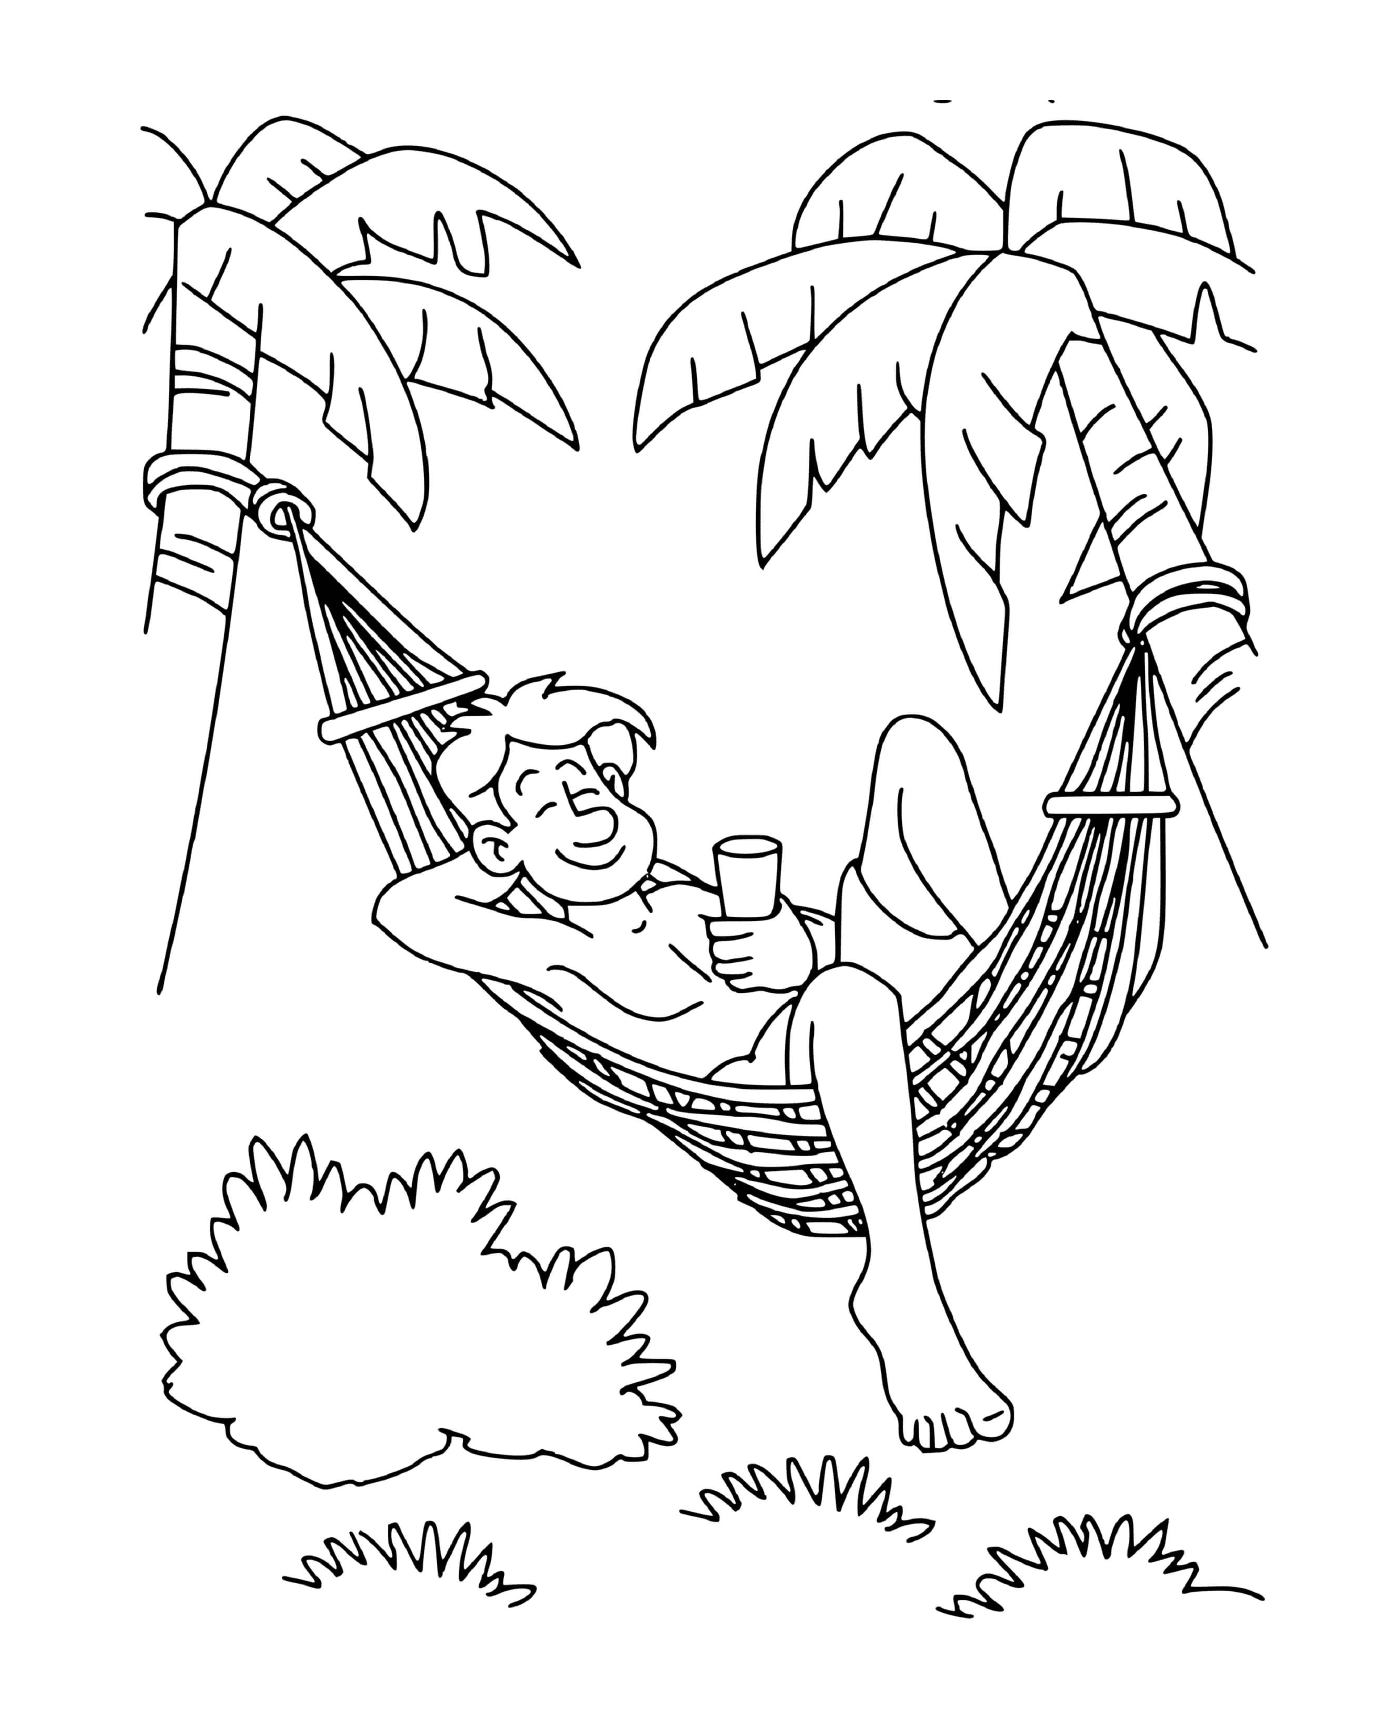  Папа отдыхает на гамаке с пальмами 